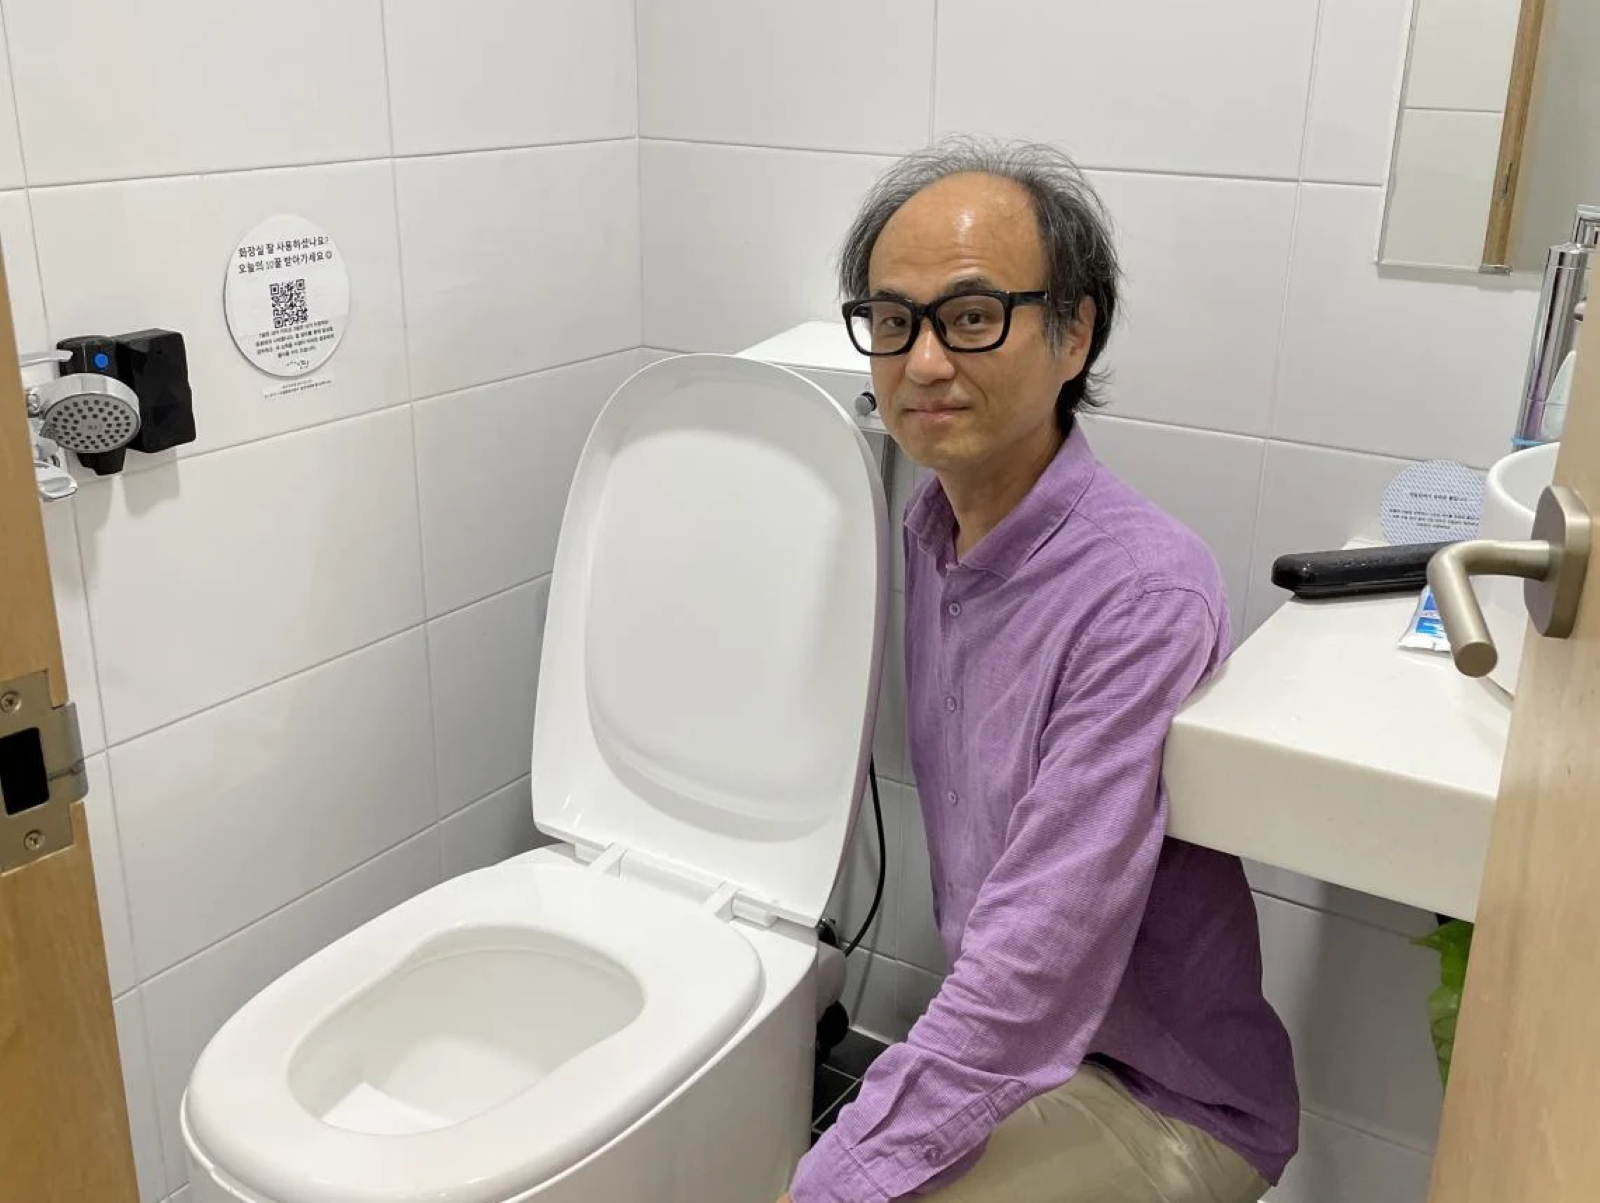 Étrange cliché que celui d’un professeur qui pose à côté de toilettes. Il faut regarder l’envers du décor pour y voir s’exprimer la science. © Waldon Center